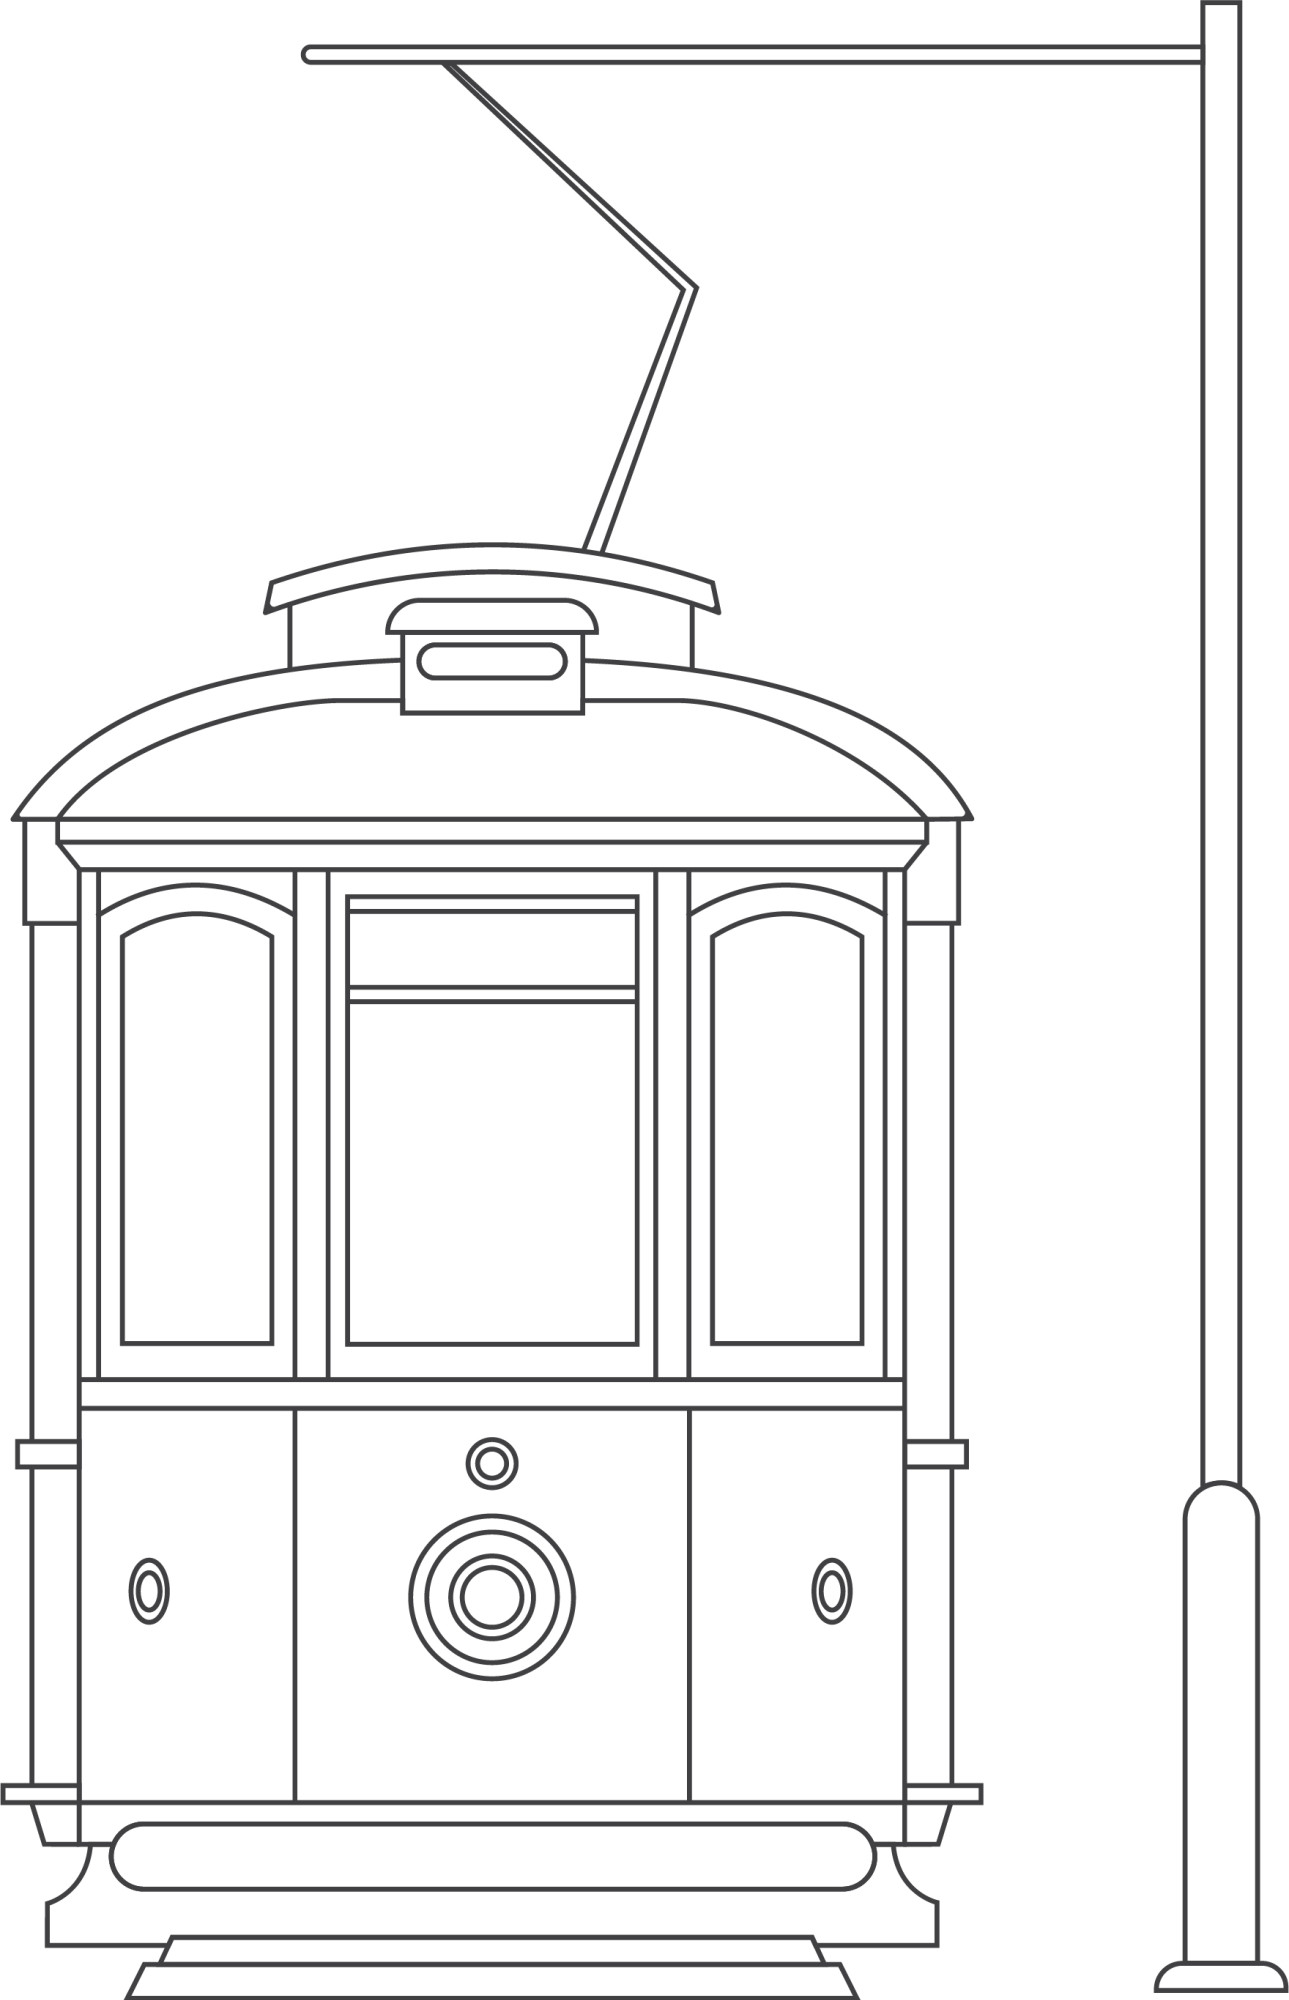 Раскраска для детей: трамвай стоит на станции